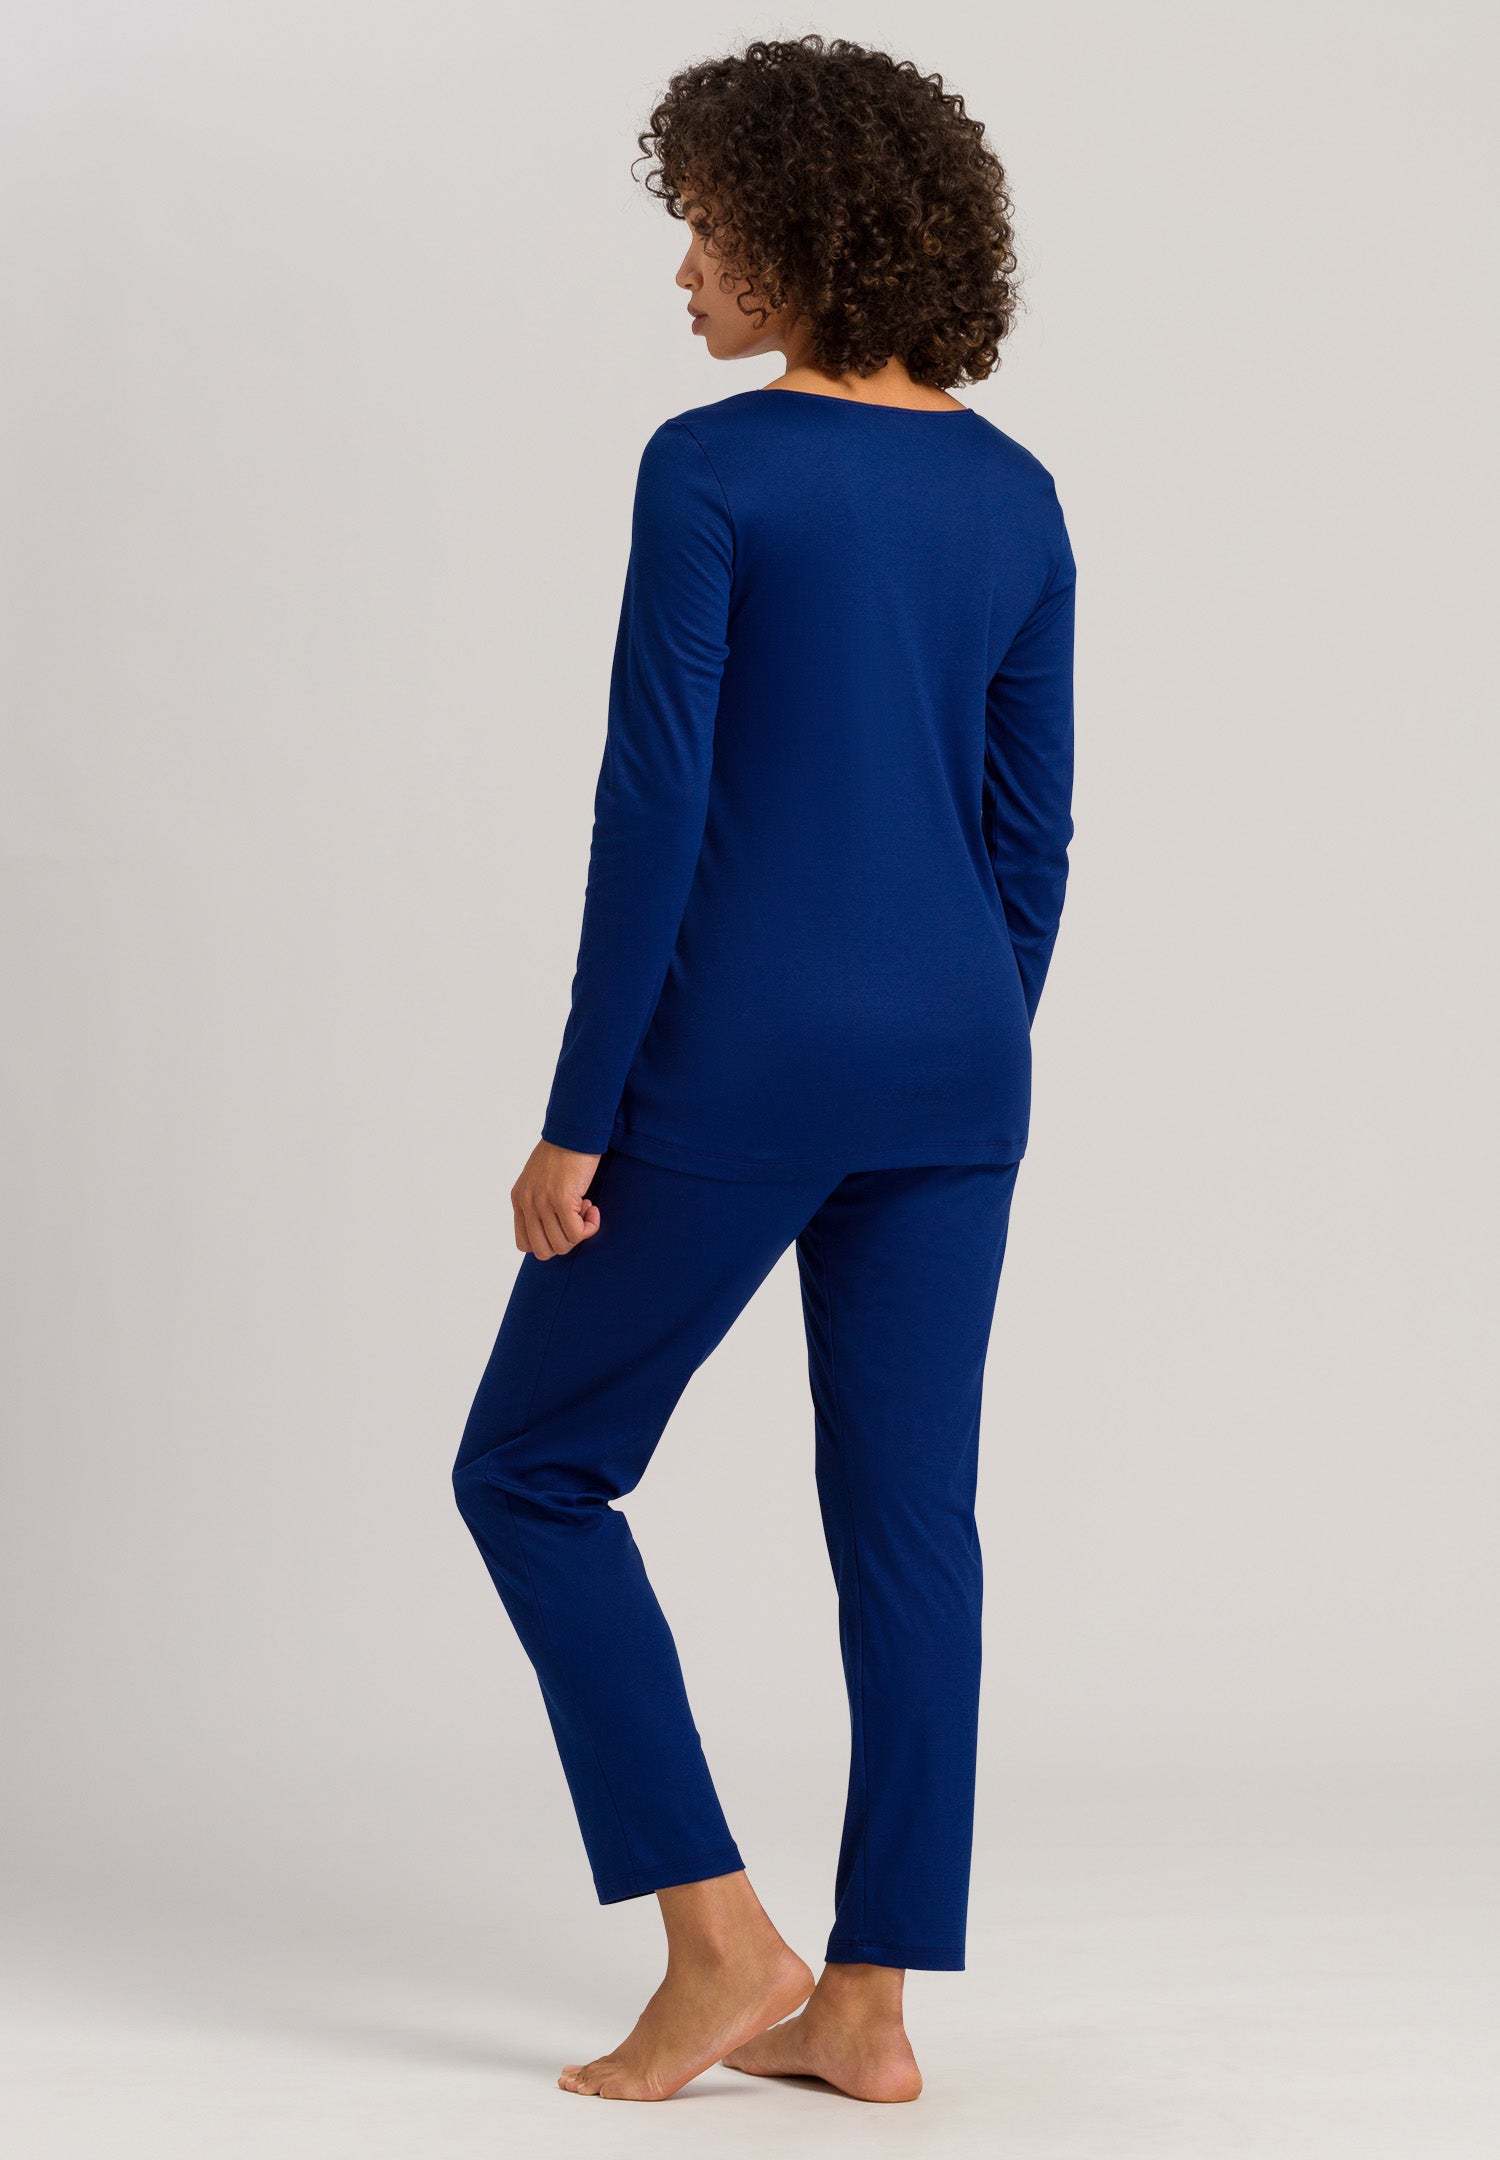 76107 Paola Long Sleeve Pajama Set - 1662 Space Blue